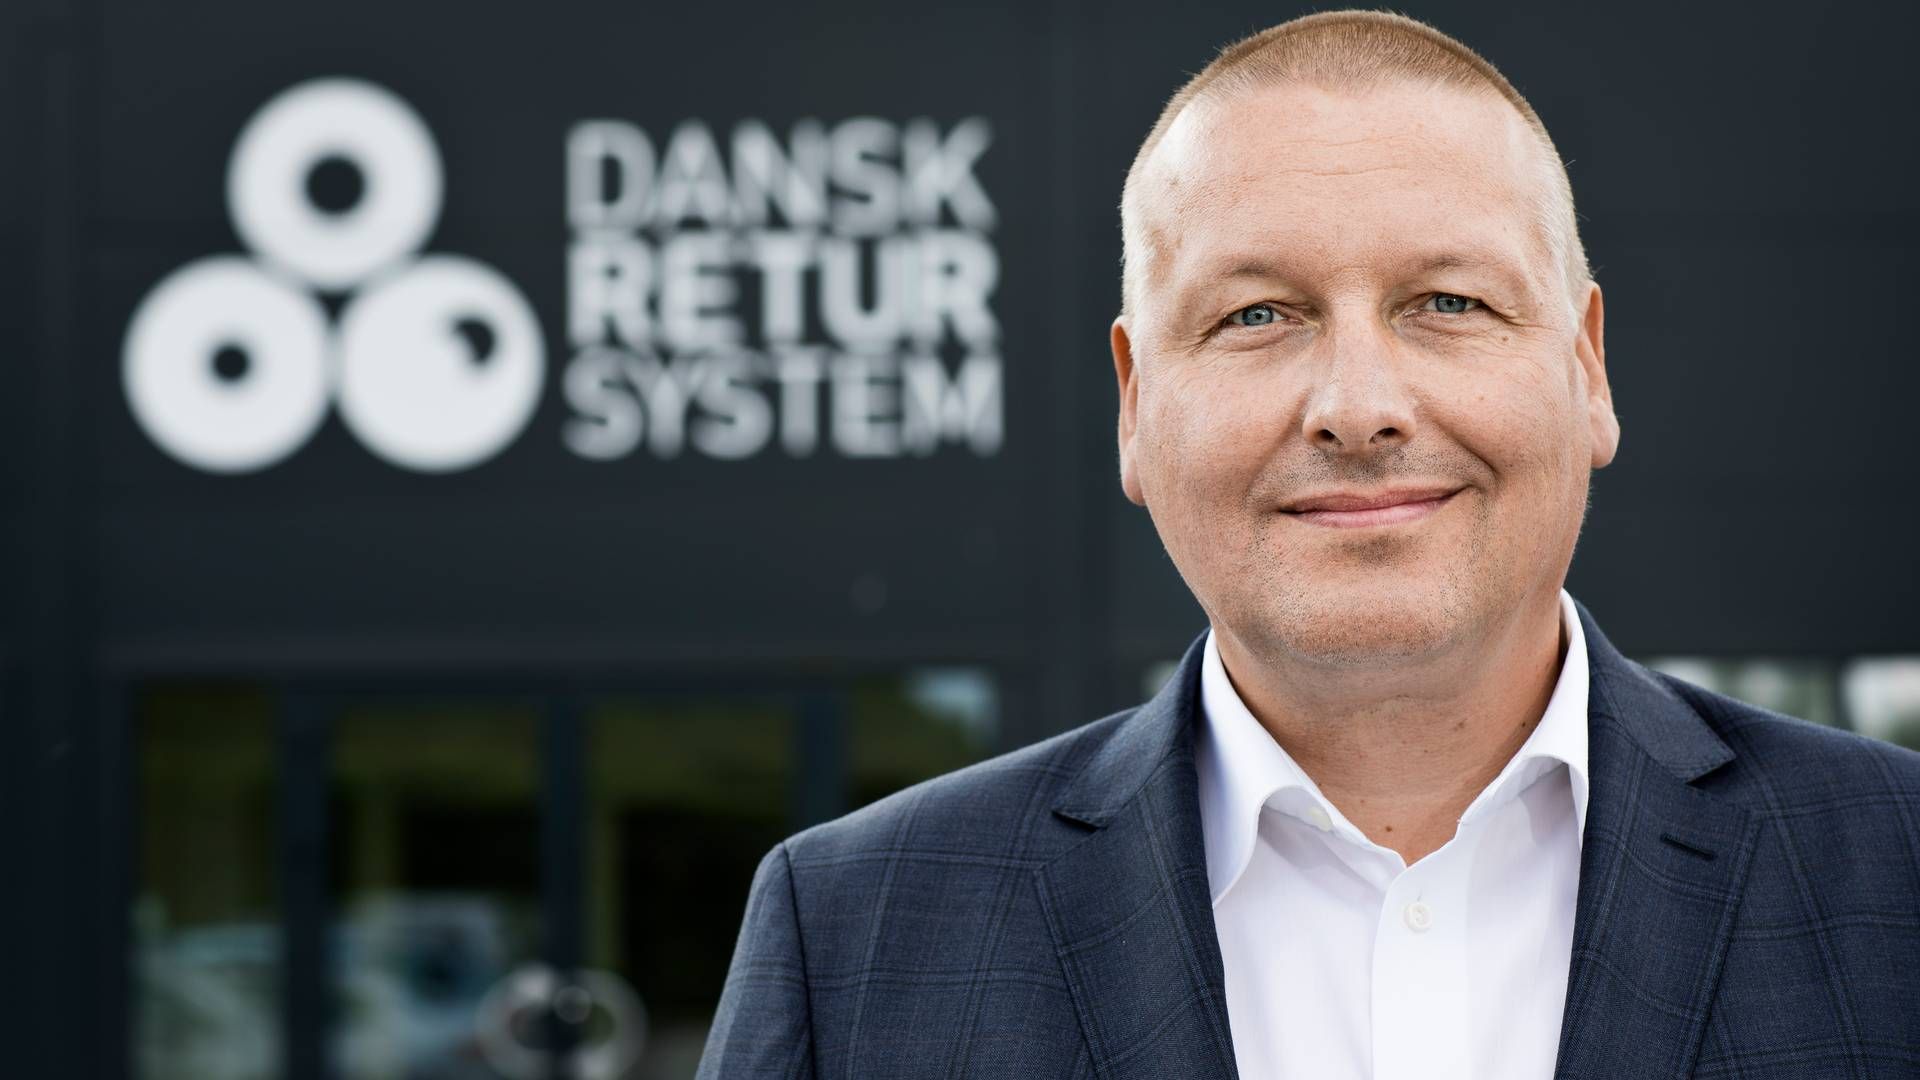 Lars Krejberg Petersen, adm. direktør i Dansk Retursystem, skal erstattes i løbet af det kommende år. Han vil i stedet kaste sig ud i bestyrelsesarbejde. | Foto: Dansk Retursystem/pr